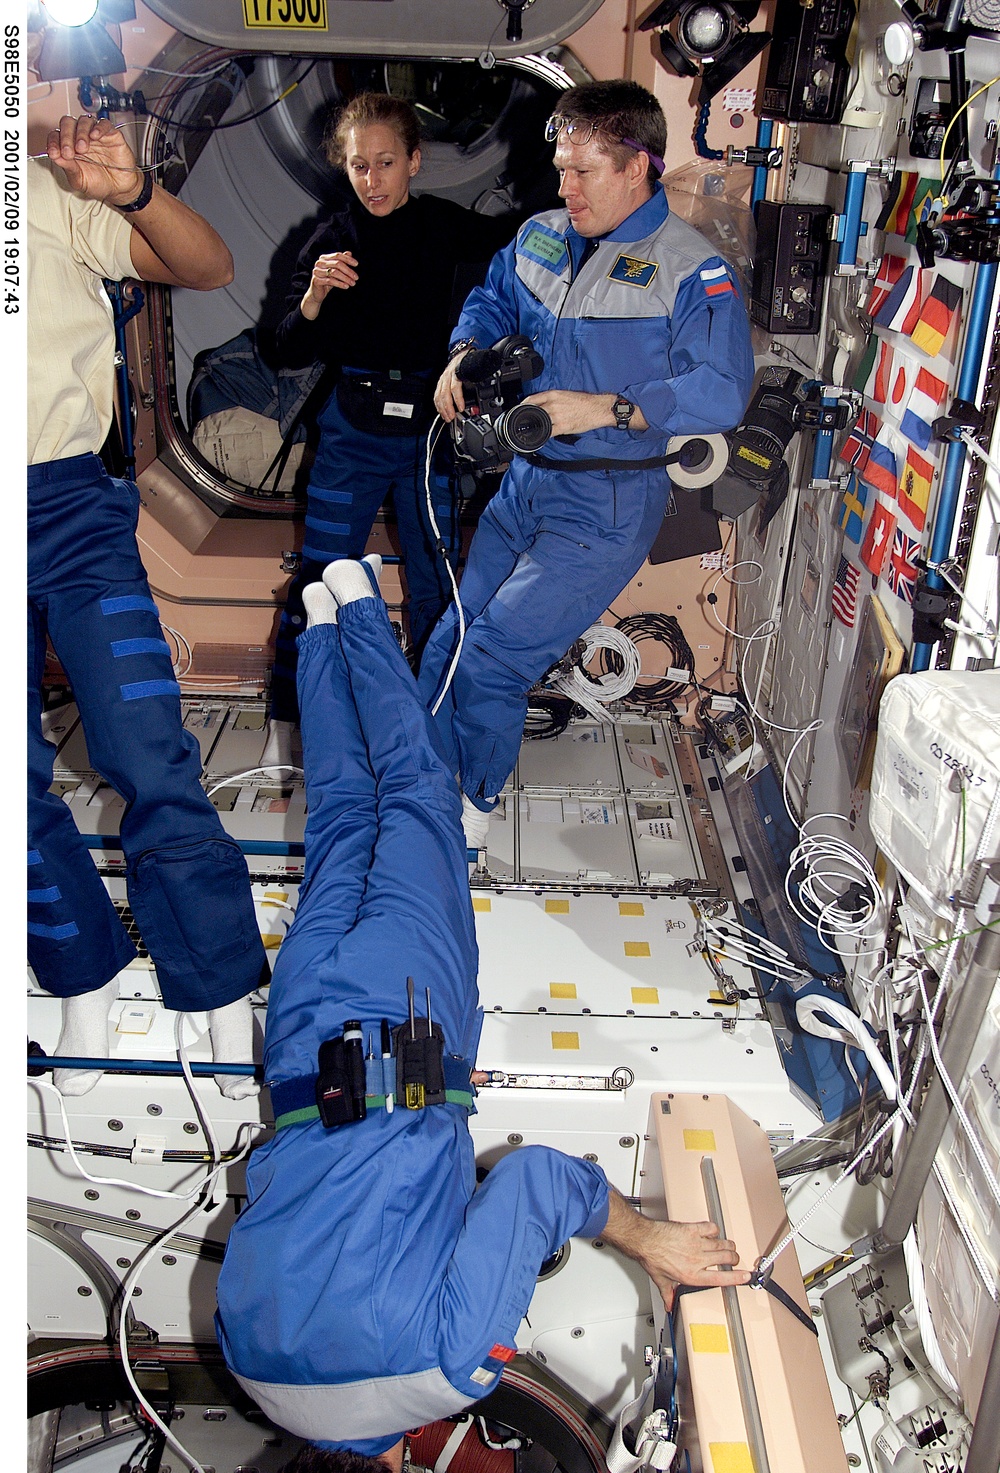 MS Ivins and Astronaut Shepherd in Node 1/Unity module